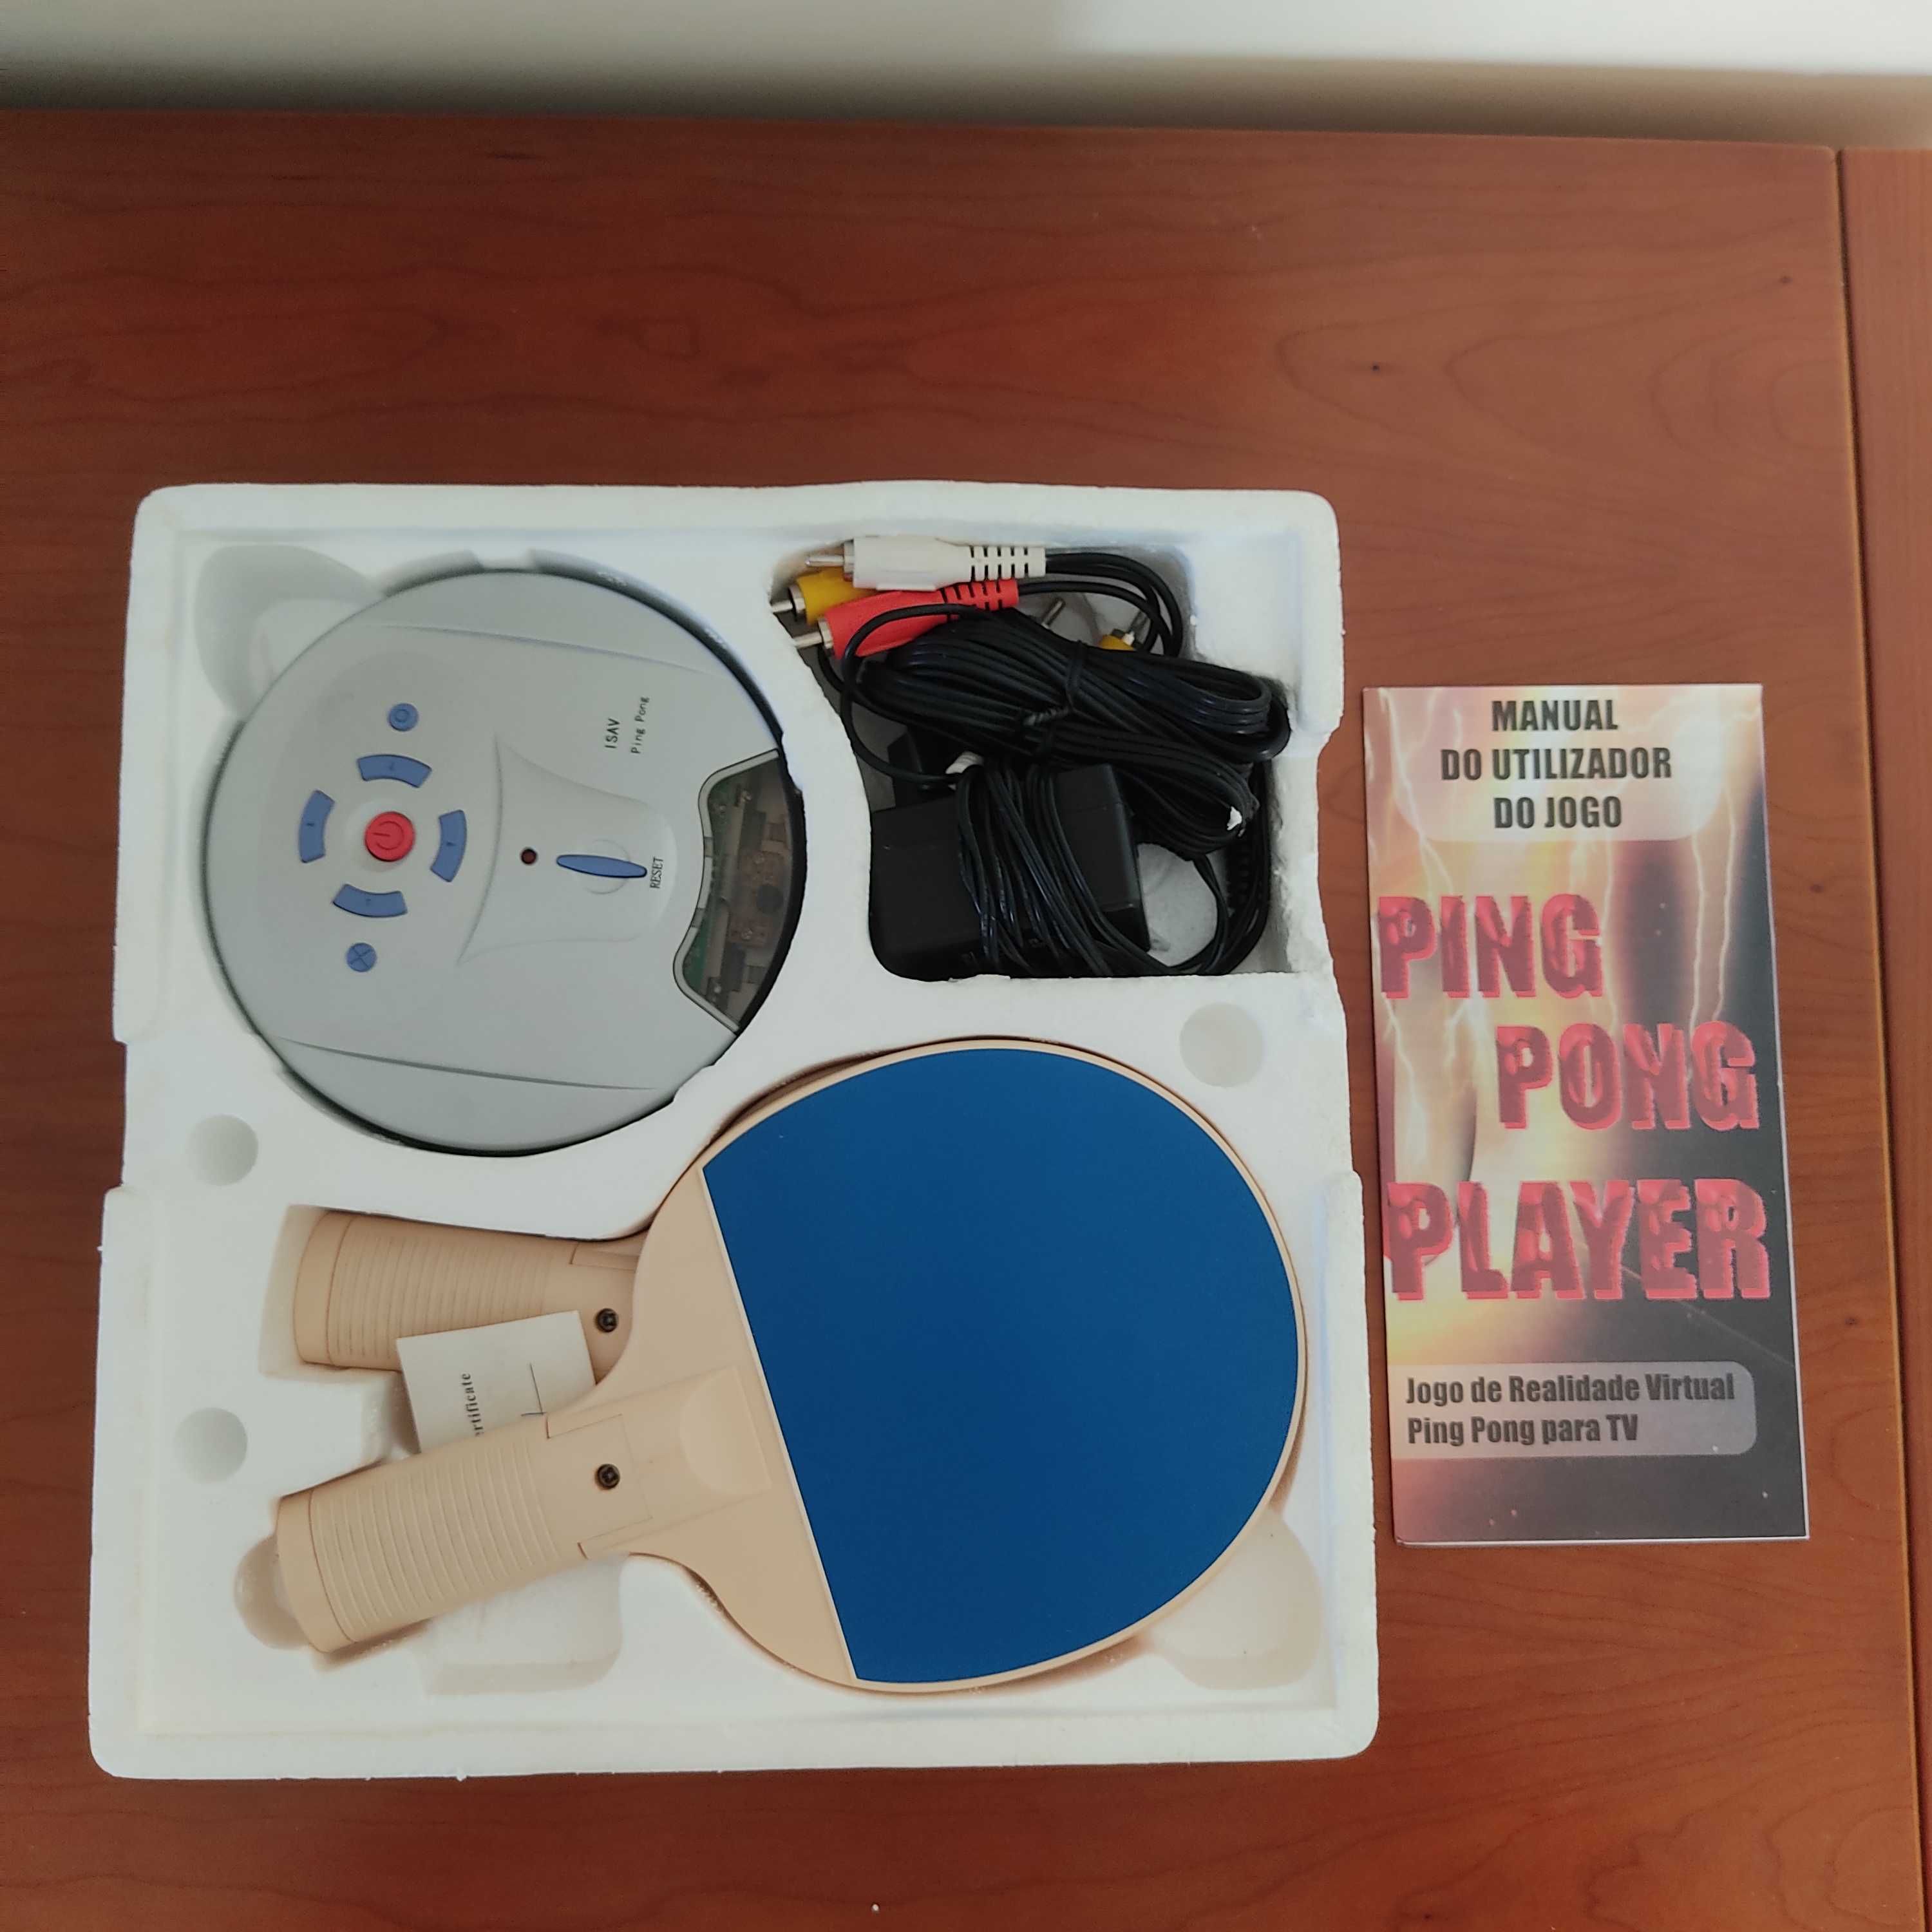 Jogo de realidade virtual retro - Ping Pong para a TV